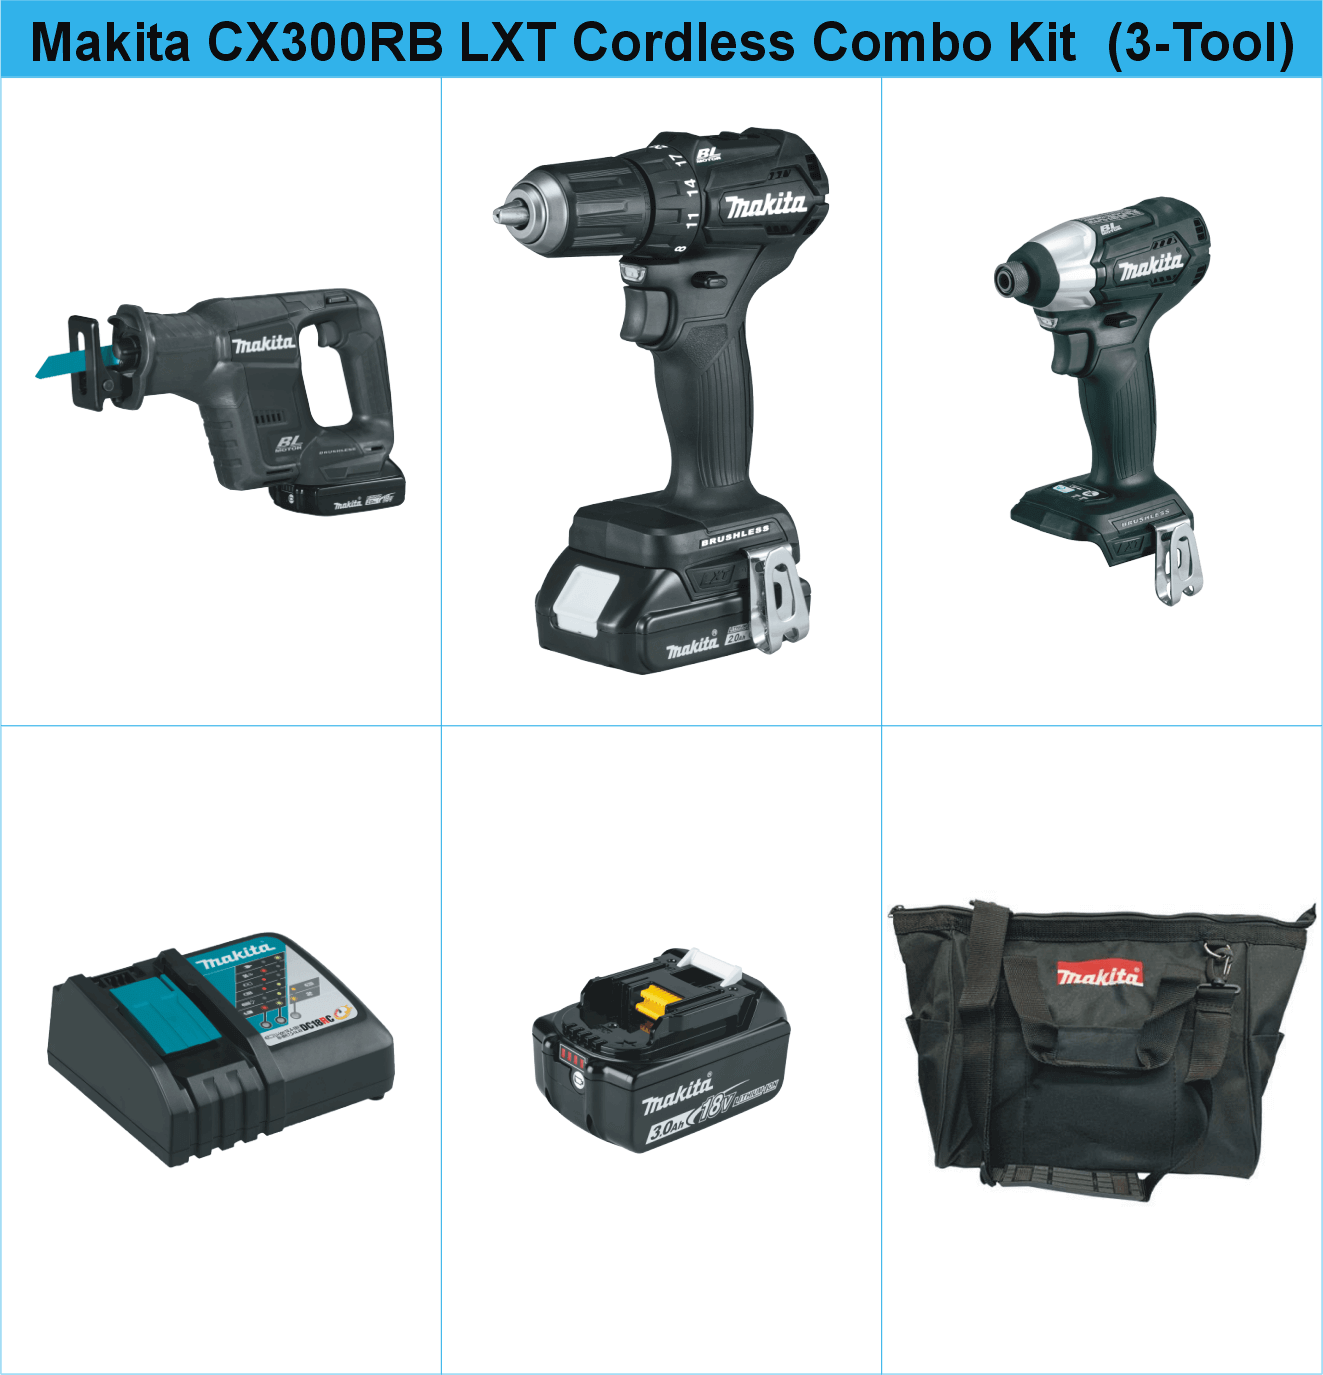 Makita CX300RB 18V LXT Sub-Compact Brushless Cordless Combo Kit